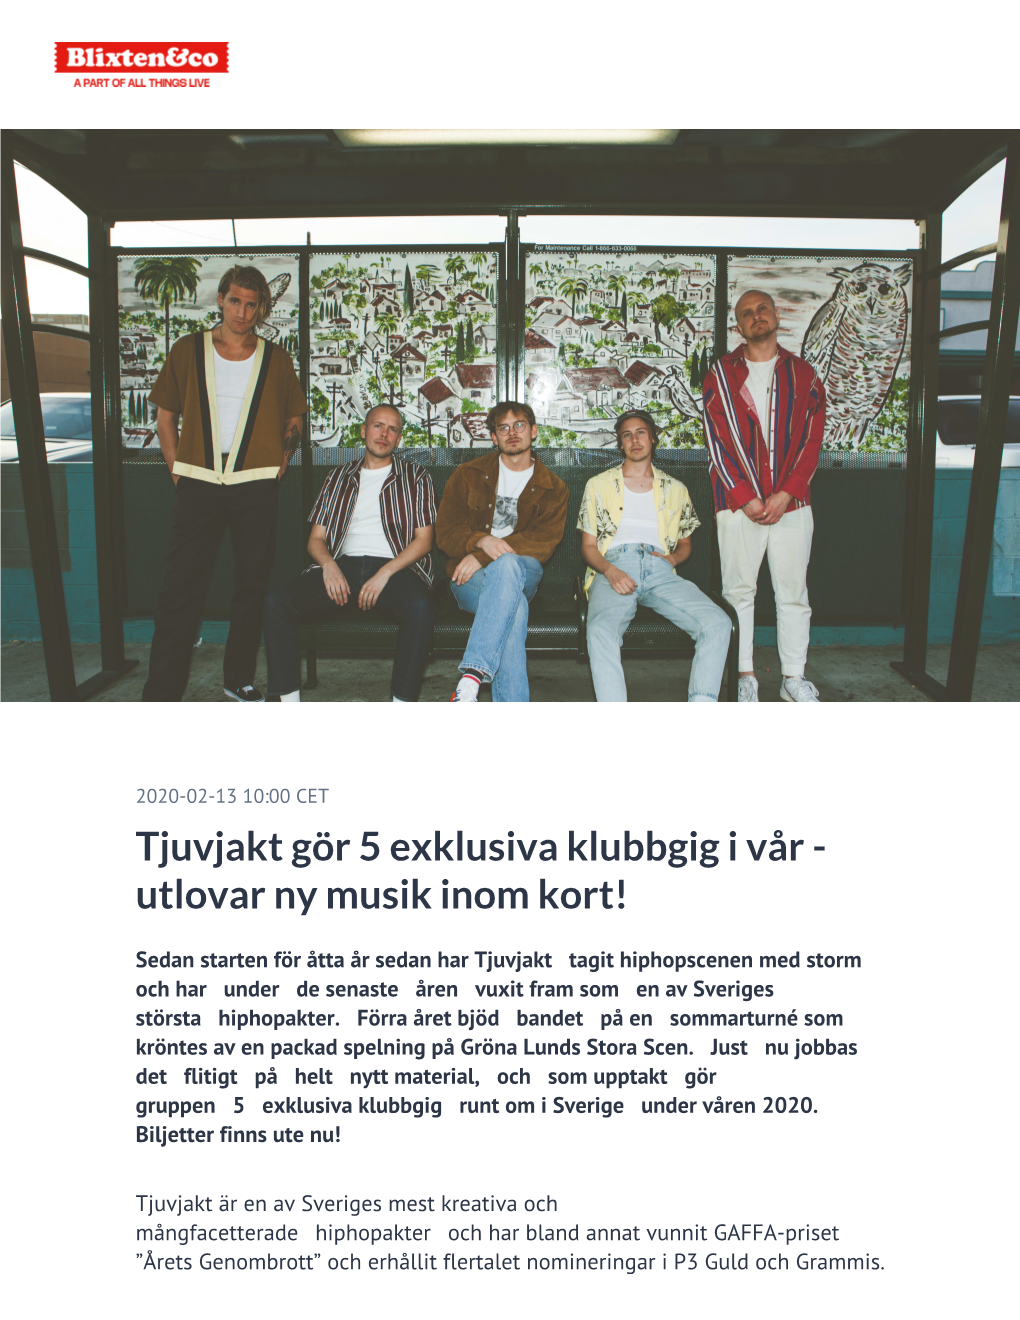 Tjuvjakt Gör 5 Exklusiva Klubbgig I Vår - Utlovar Ny Musik Inom Kort!